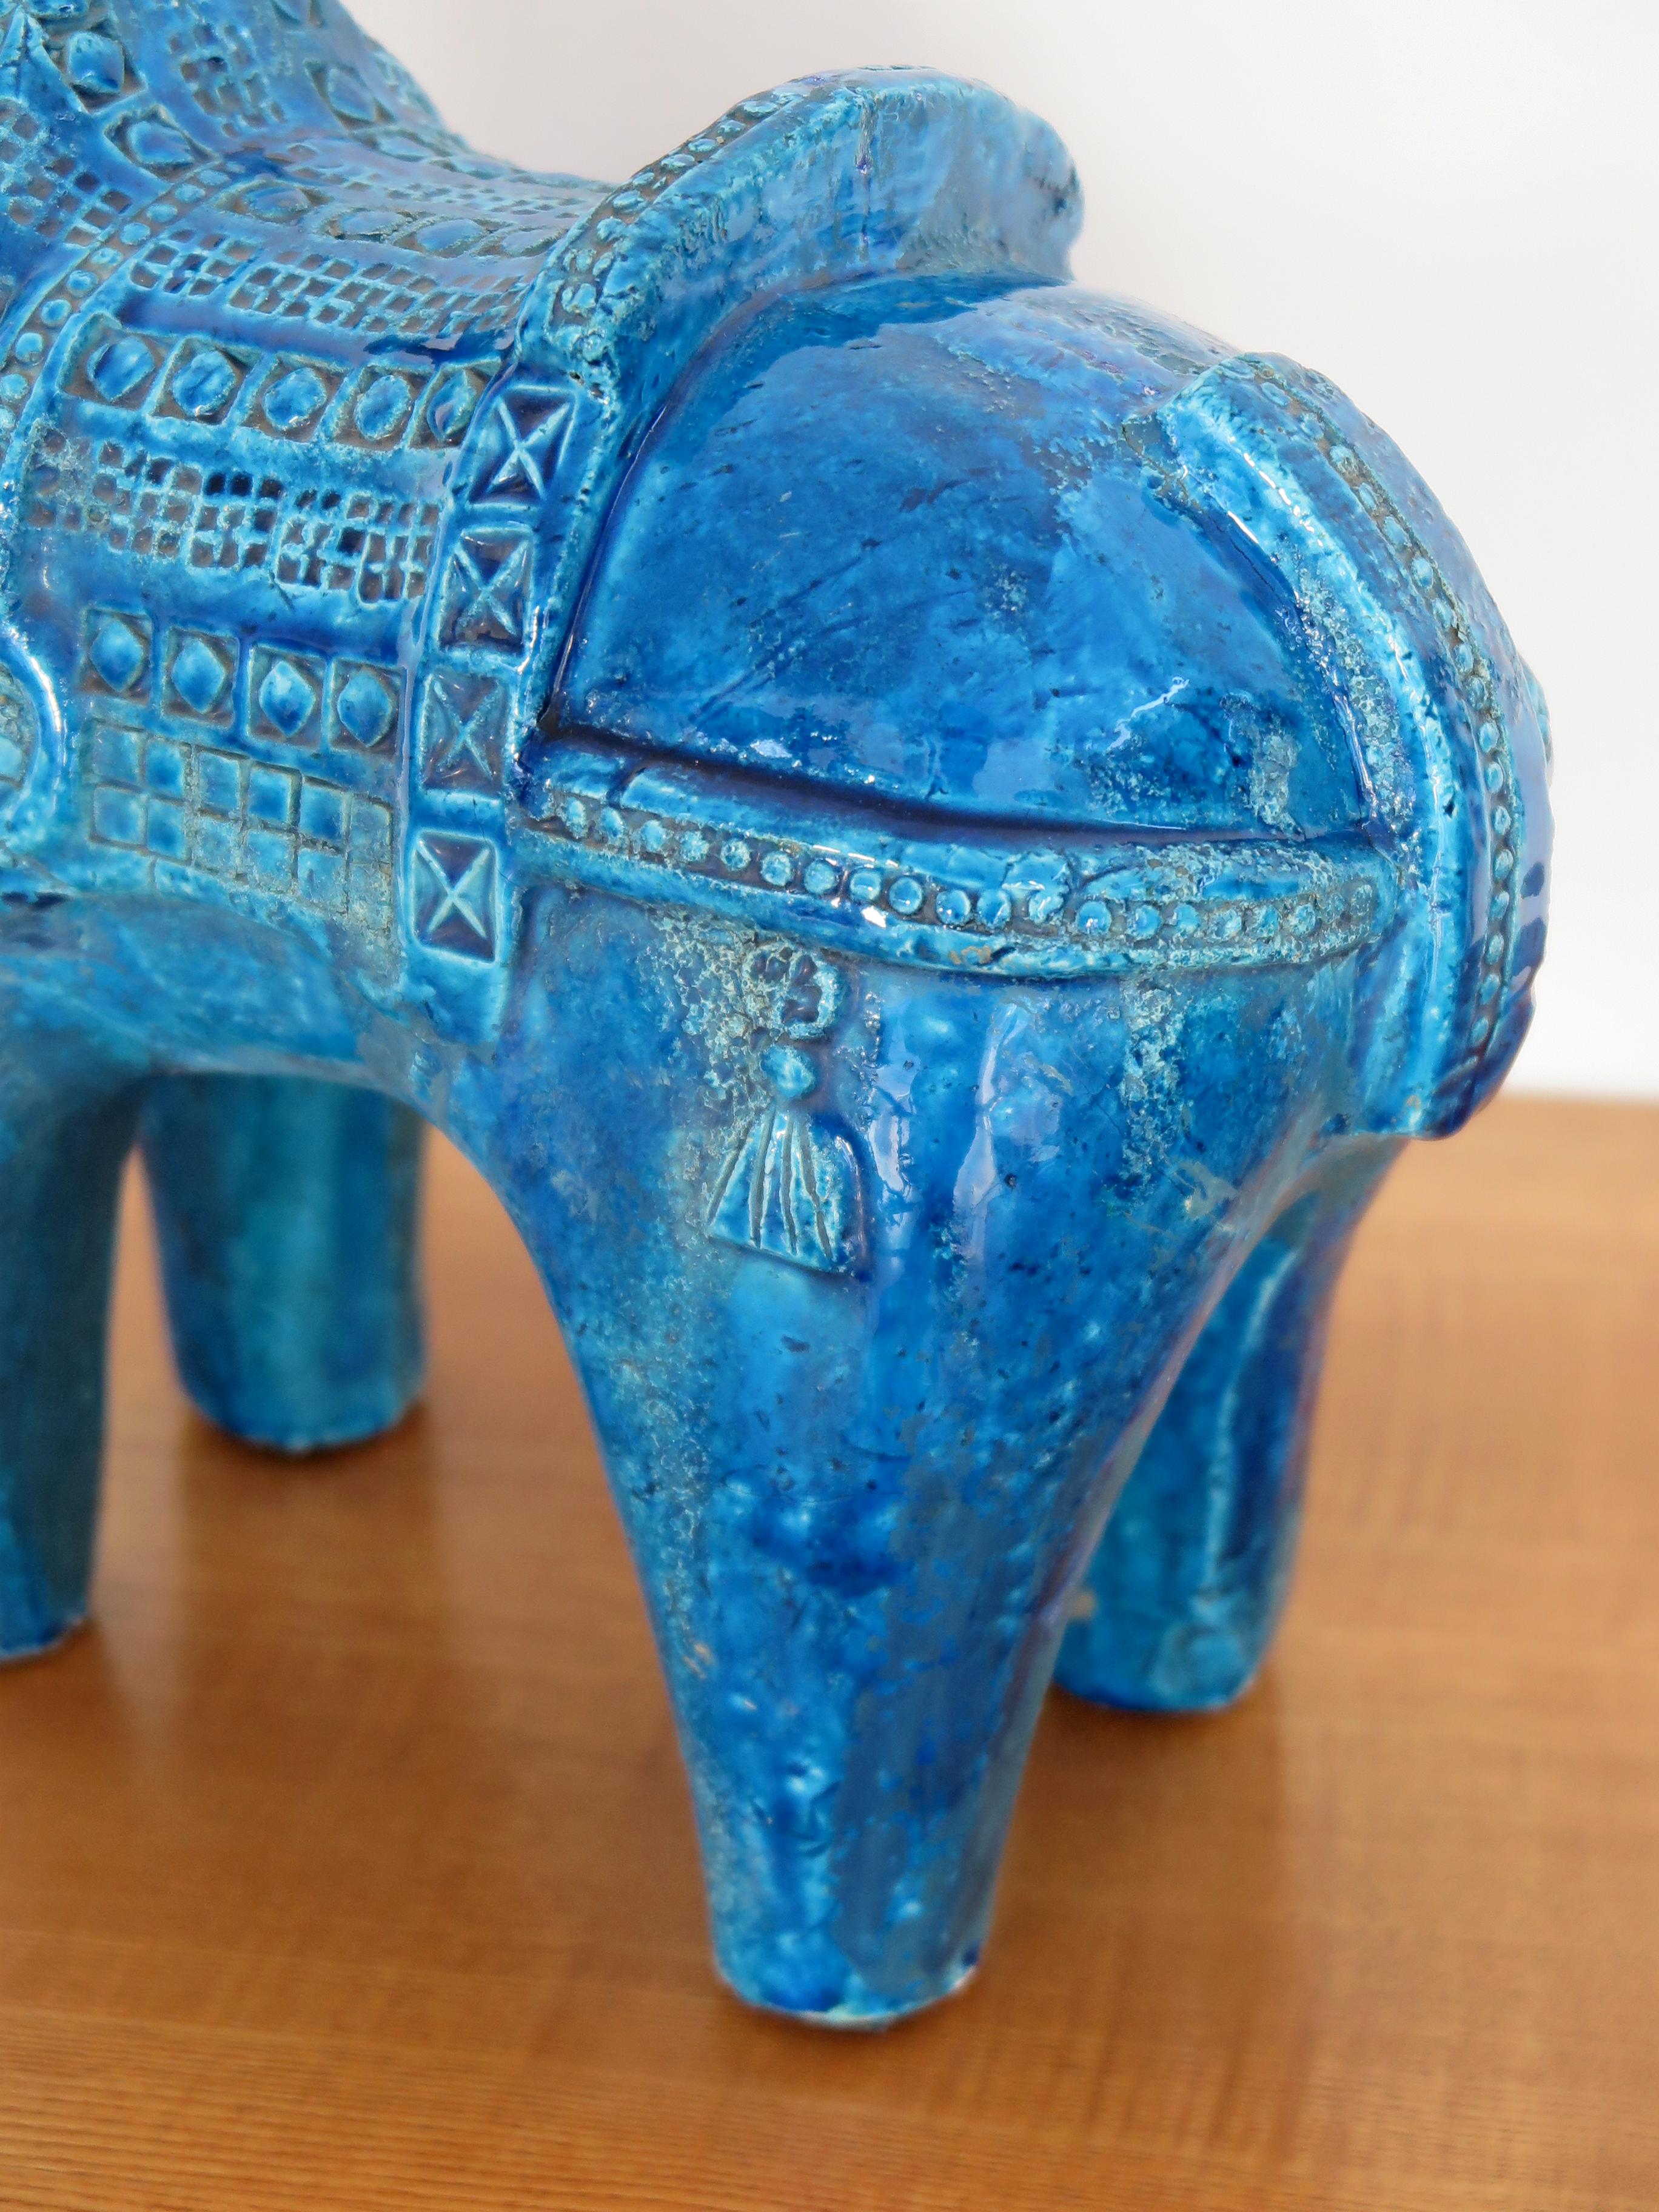 Aldo Londi for Bitossi Italian Midcentury Blue Sculpture Ceramic Horse 1960s For Sale 1